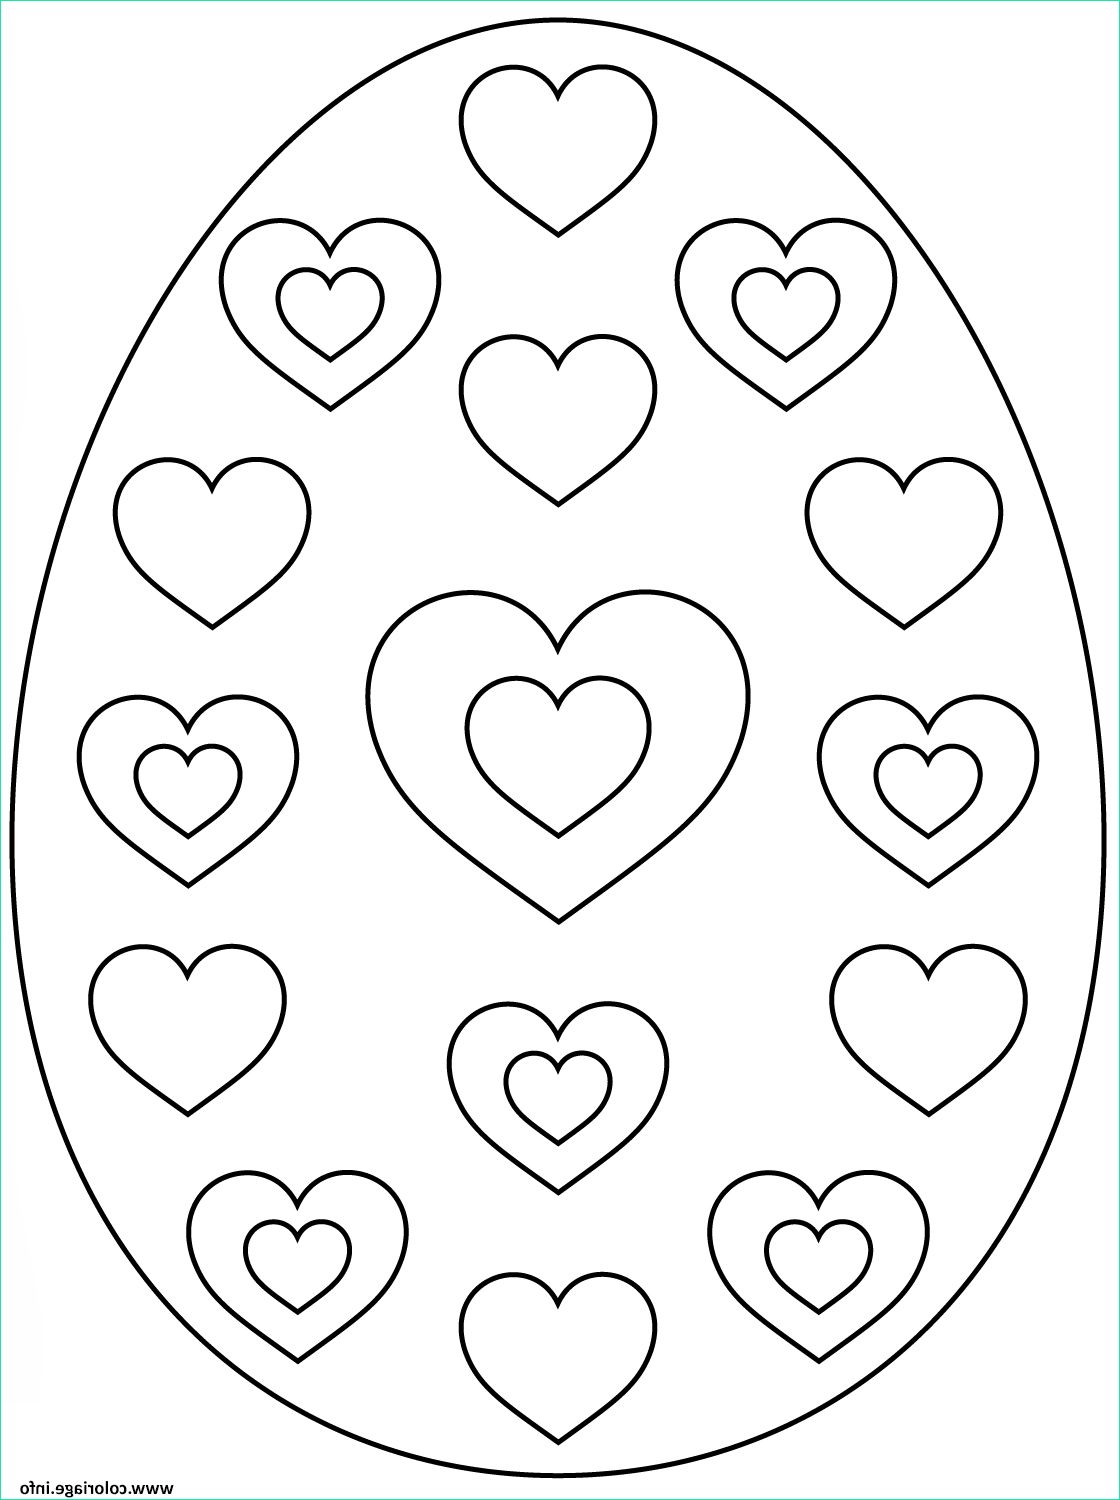 oeuf de paques avec hearts coloriage